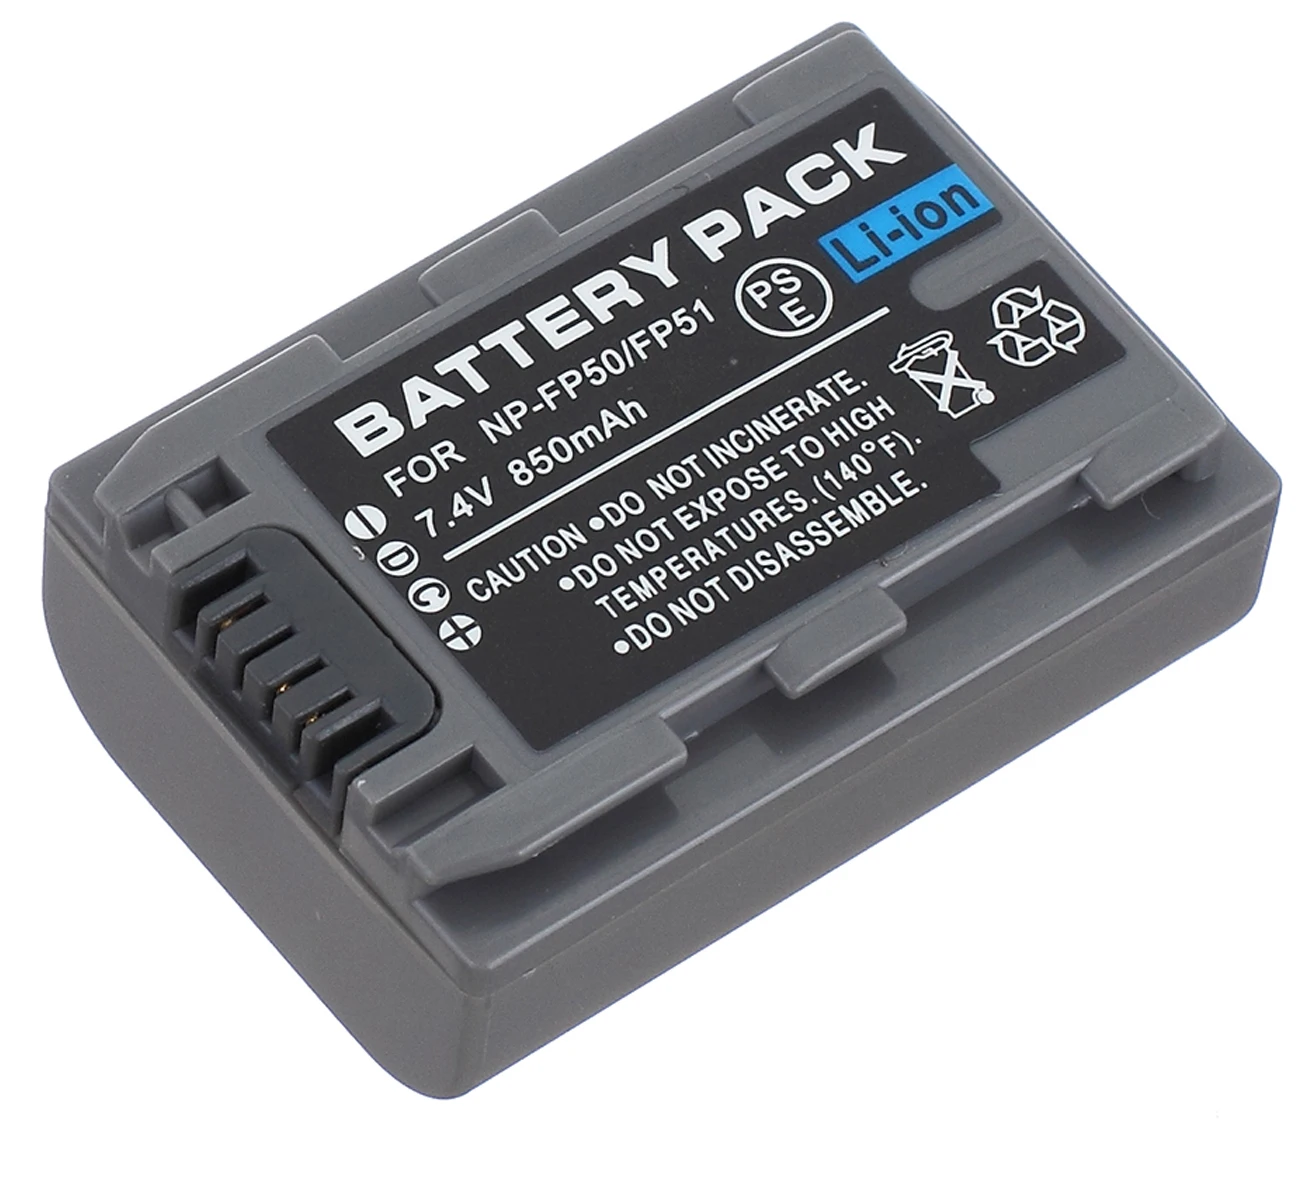 

Battery Pack for Sony DCR-HC30E, DCR-HC32E, DCR-HC33E, DCR-HC35E, DCR-HC36E, DCR-HC39E Handycam Camcorder